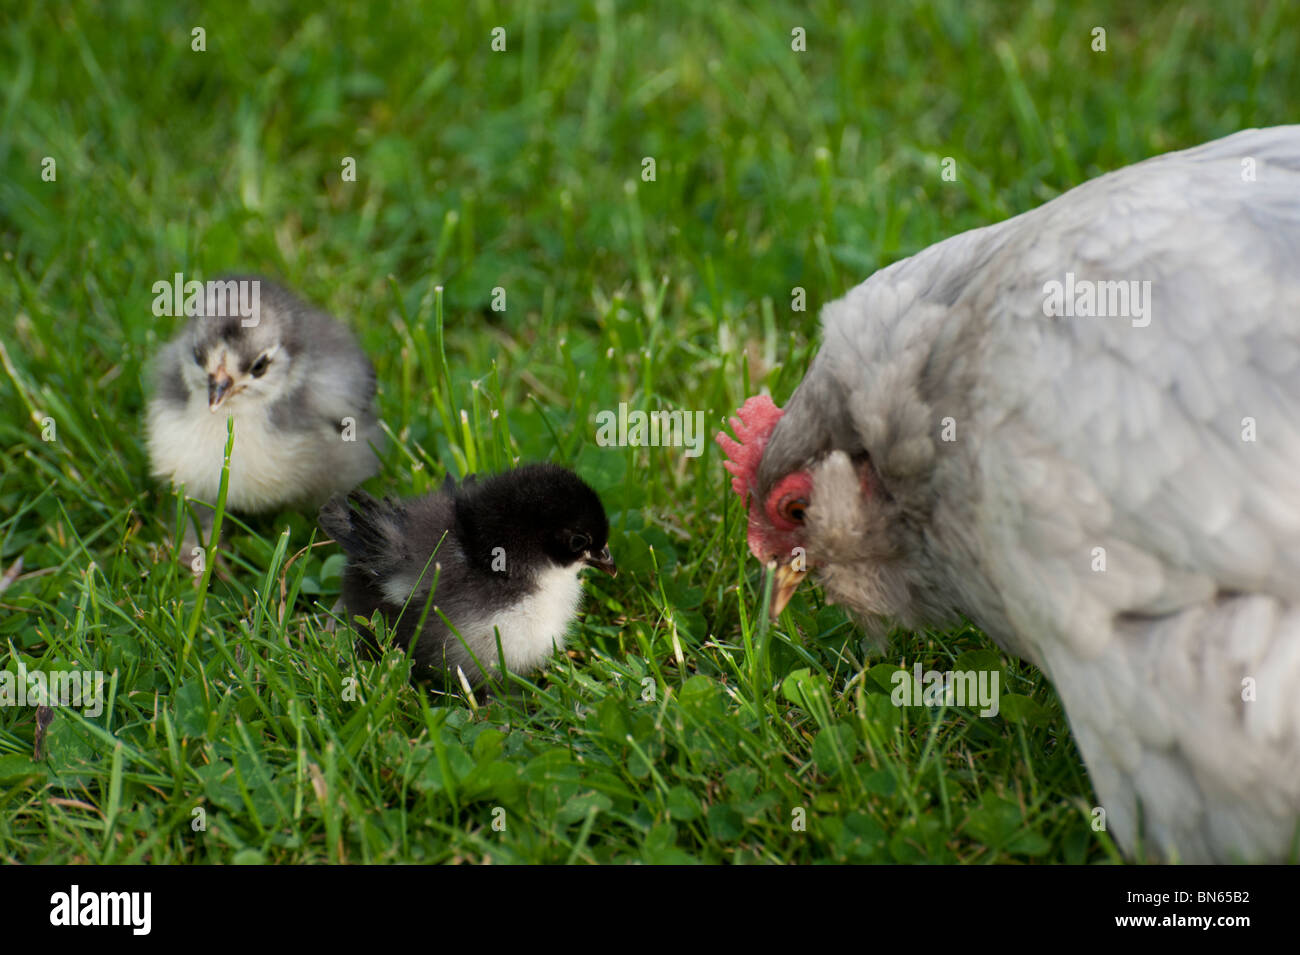 Une poule bantam de Pékin gris clair avec deux poussins bantam sur une pelouse verte. Banque D'Images